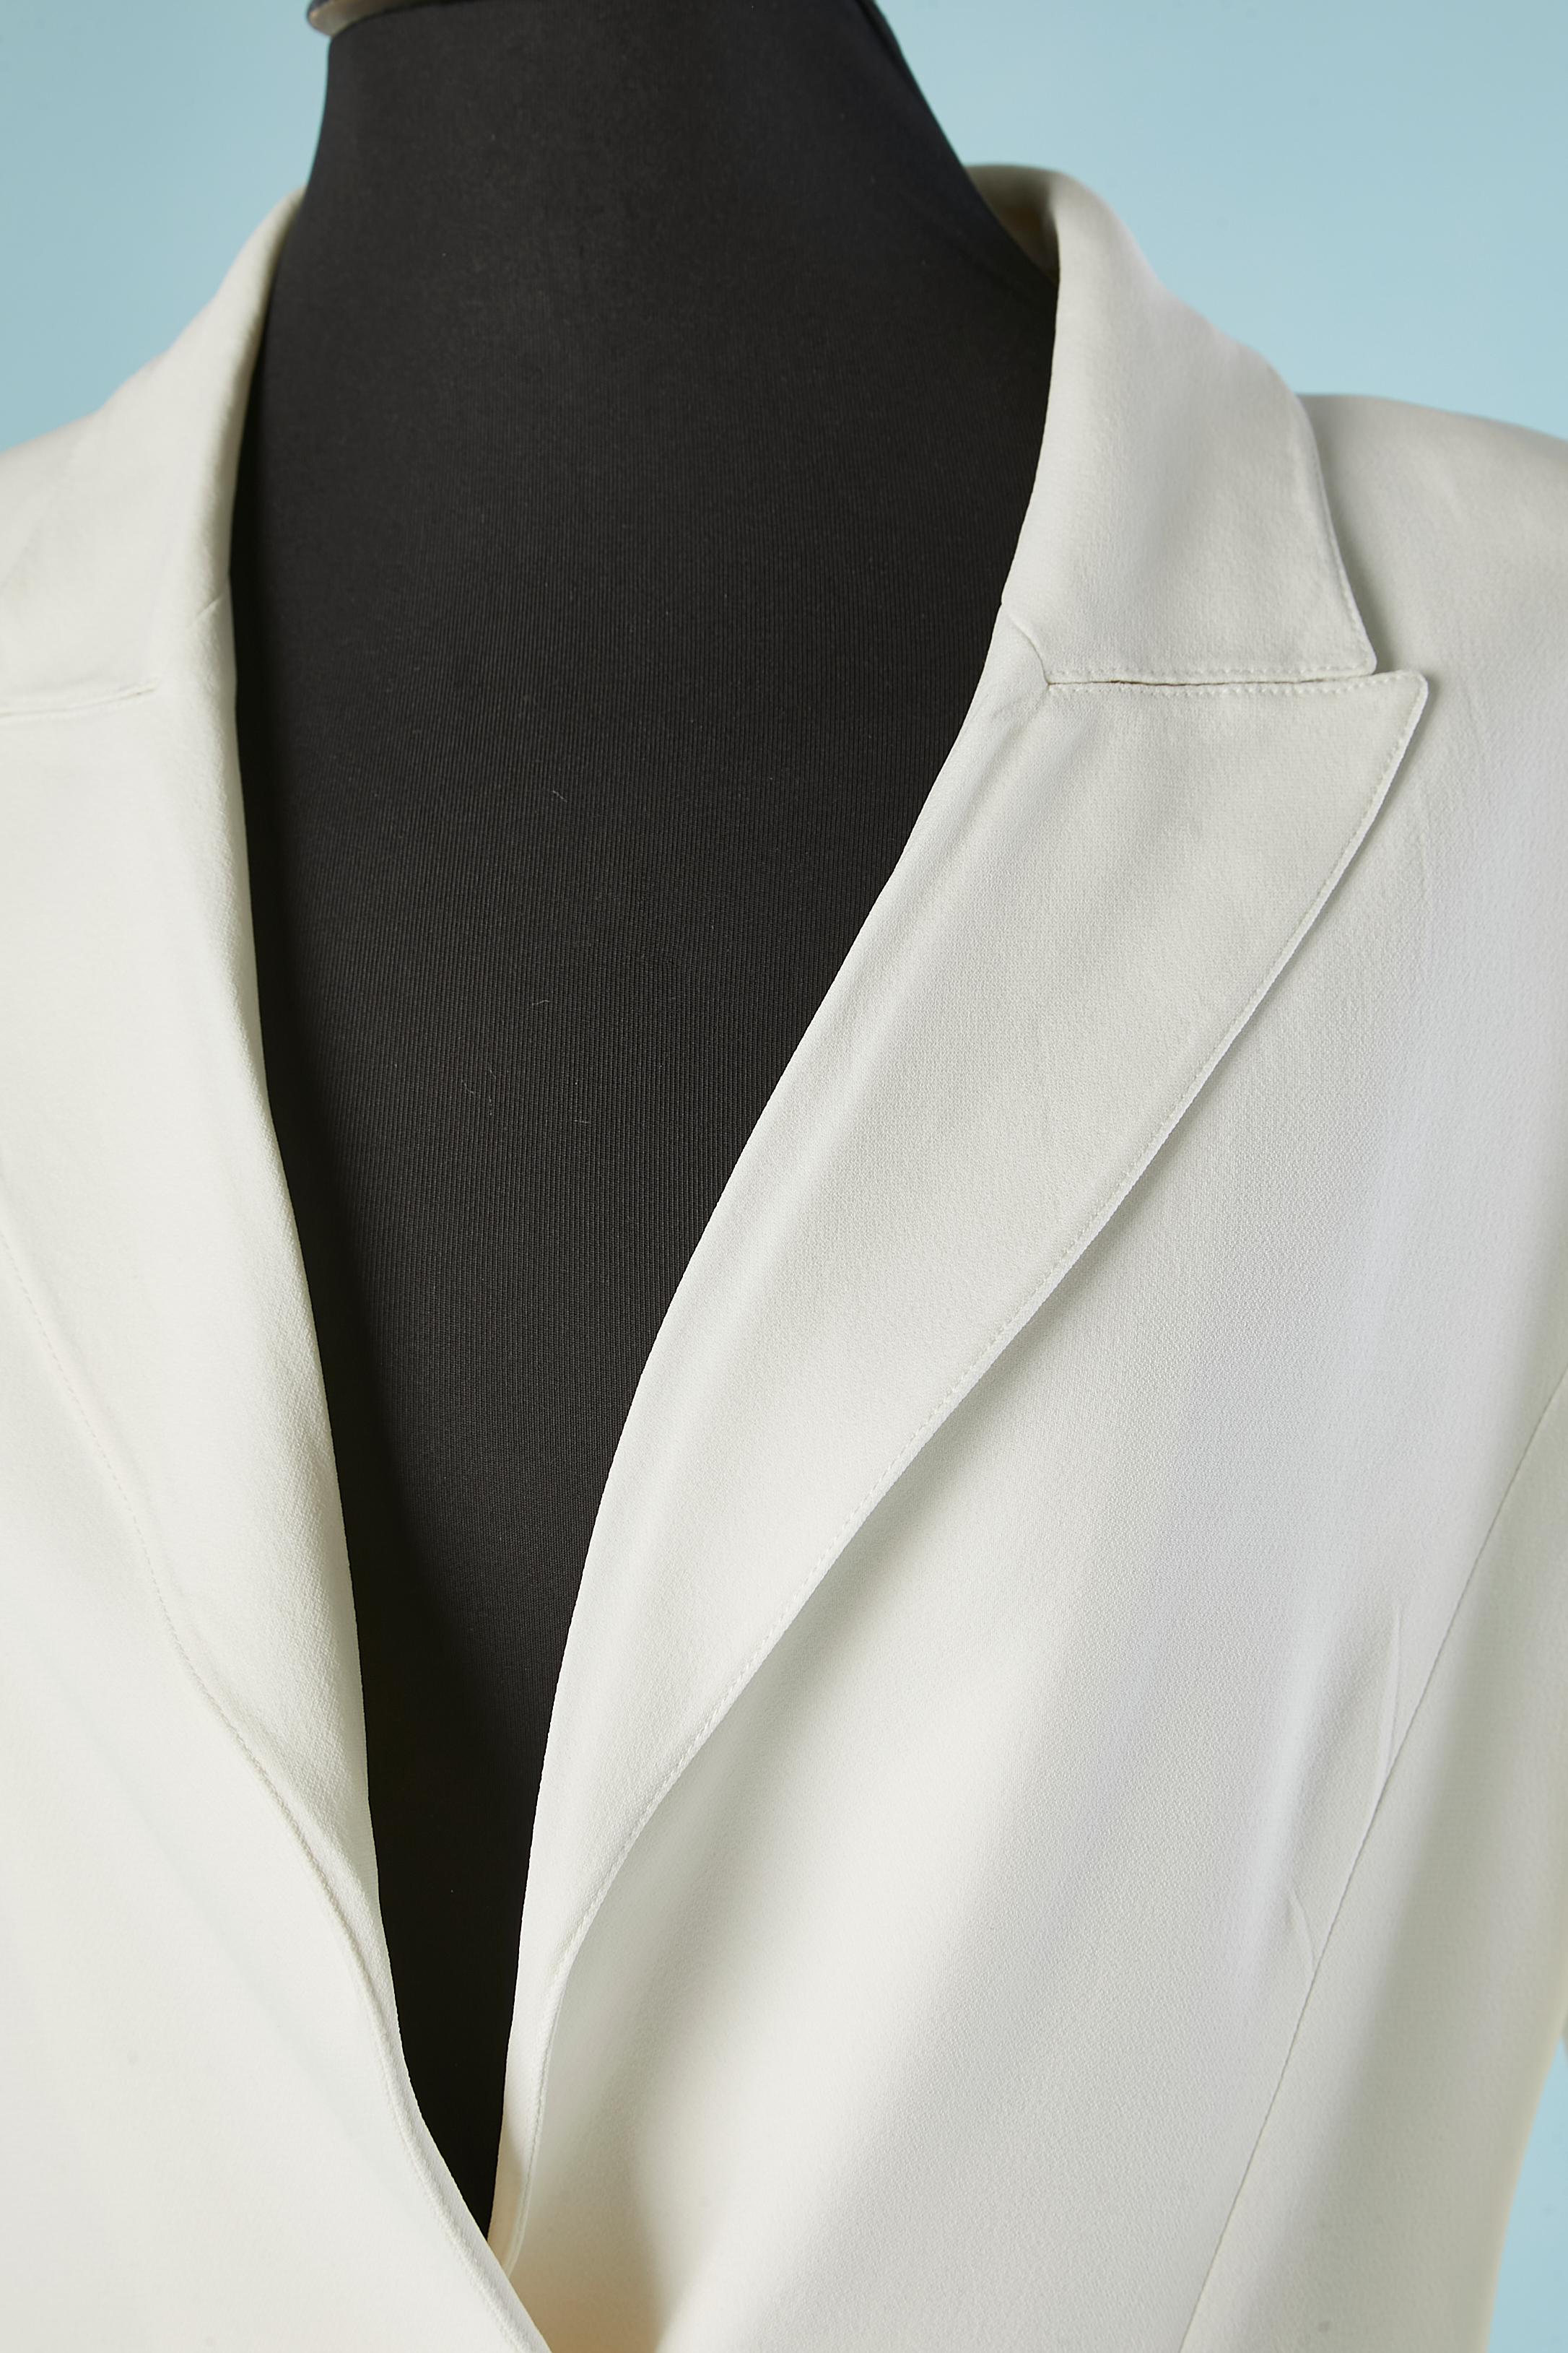 Combinaison-pantalon en crêpe blanc . La veste à simple boutonnage se ferme à l'aide d'un bouton en nacre. Pad d'épaule ; fendu des deux côtés, longueur= 27 cm
Doublure en soie. 
Taille de la veste= 42 (It) 8 (US) 
Taille du pantalon = 40 (It) 6